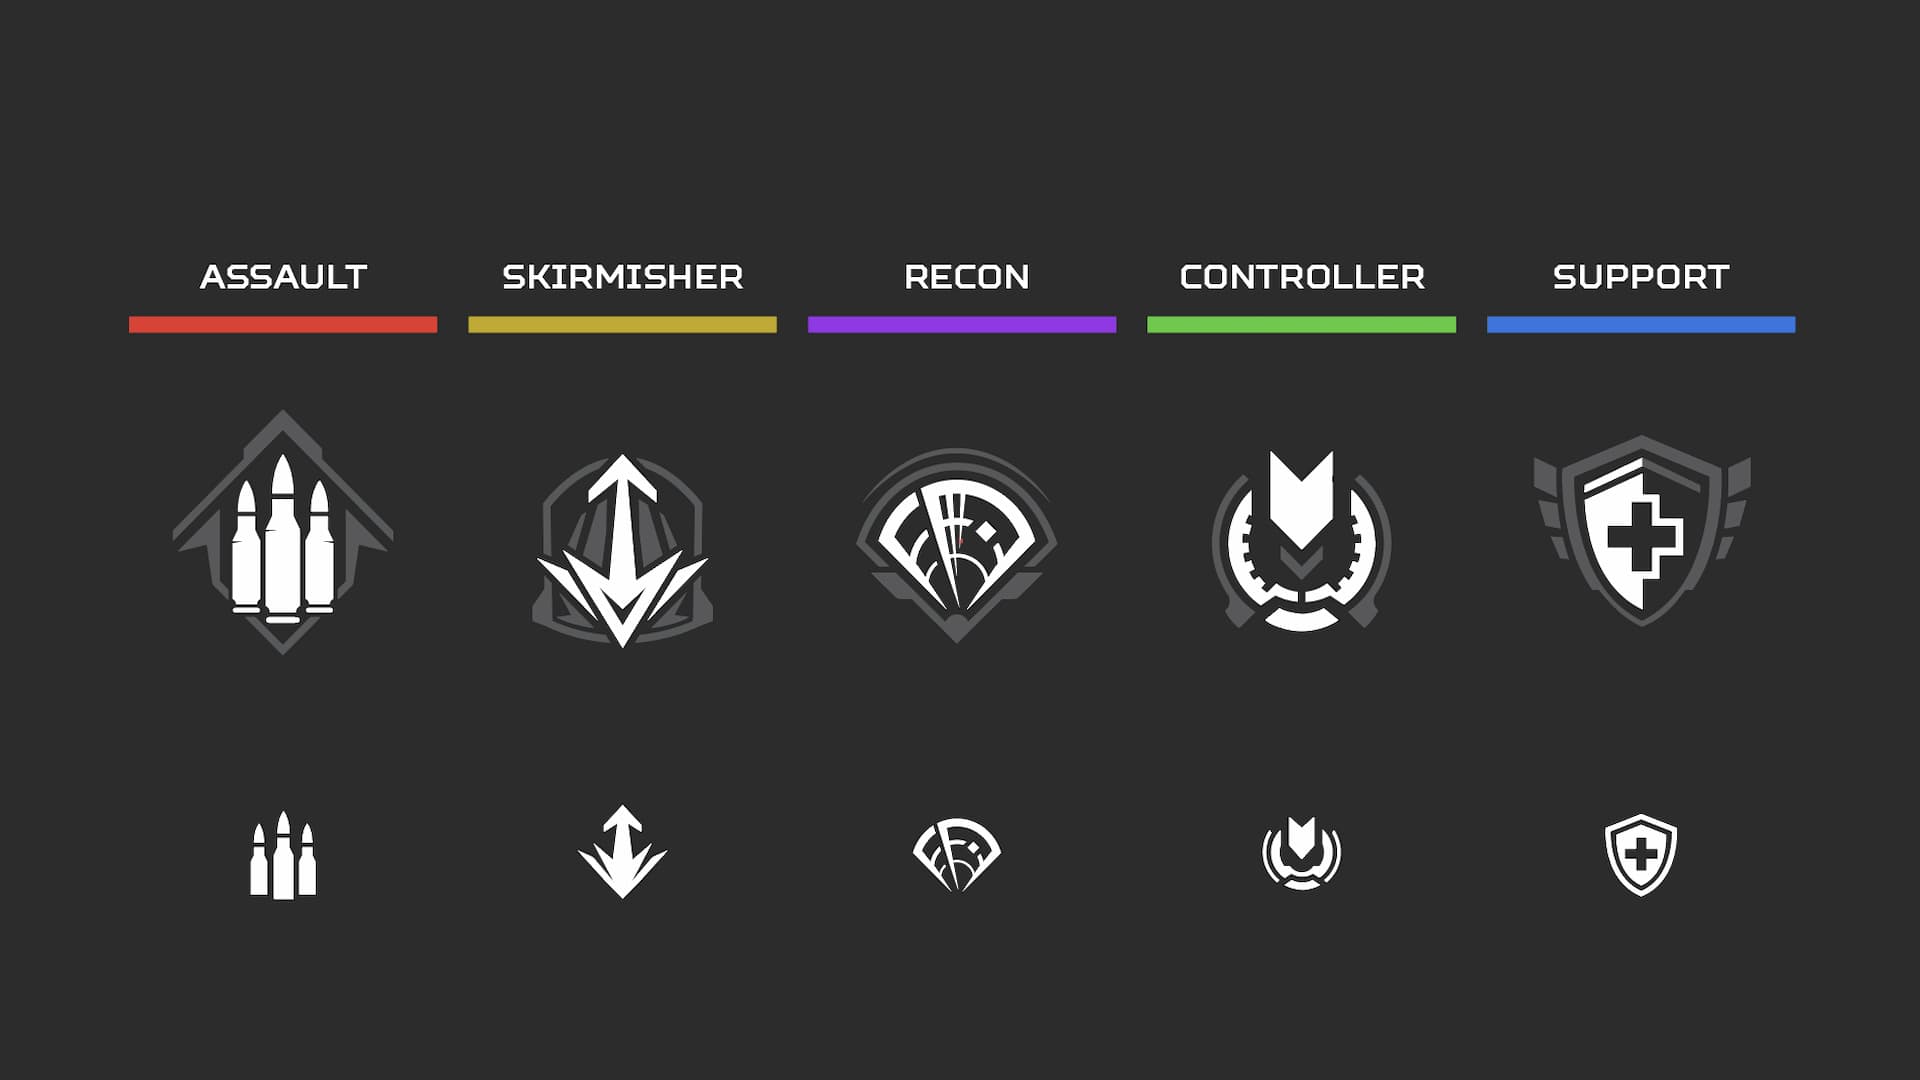 Apex Legends Staffel 16 überarbeitet die Klassen und überspringt das Hinzufügen neuer Charaktere: weiße Symbole und Klassentitel auf schwarzem Hintergrund